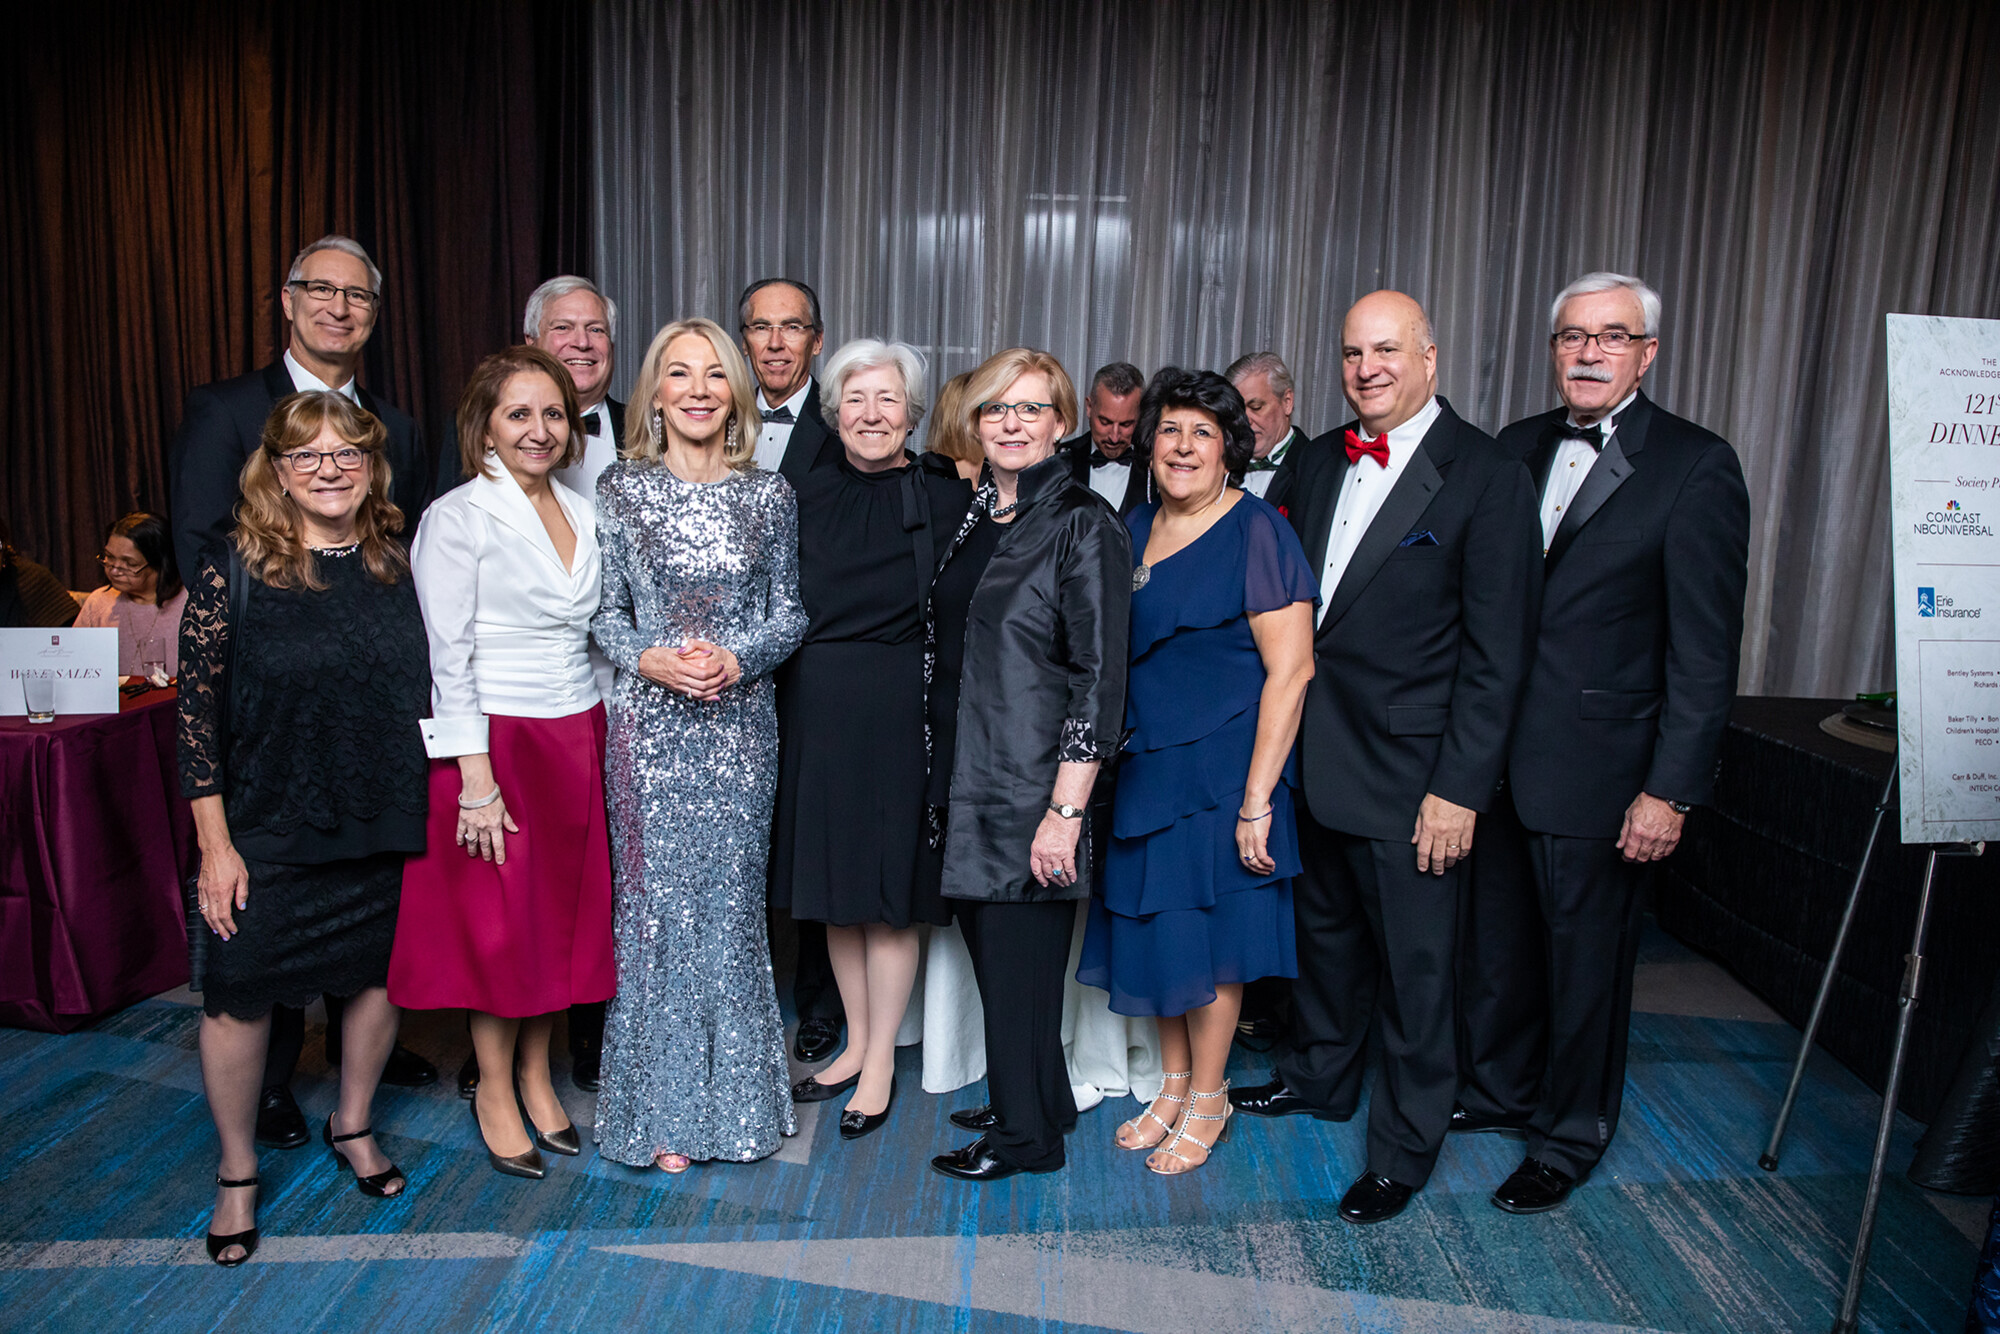 Group photo of Penn President Amy Gutmann and xxxx